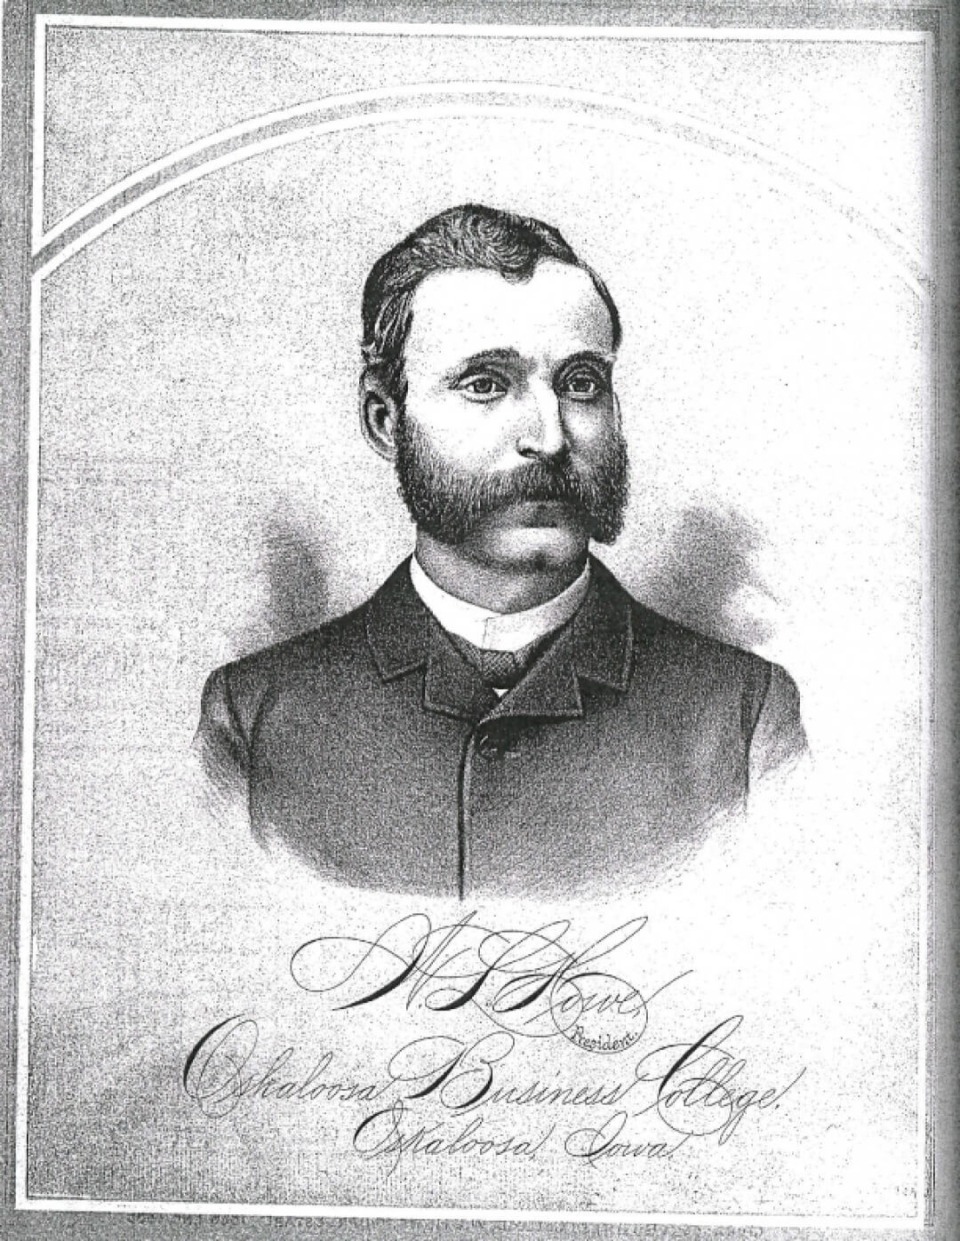 Portrait of professor William L. Howe